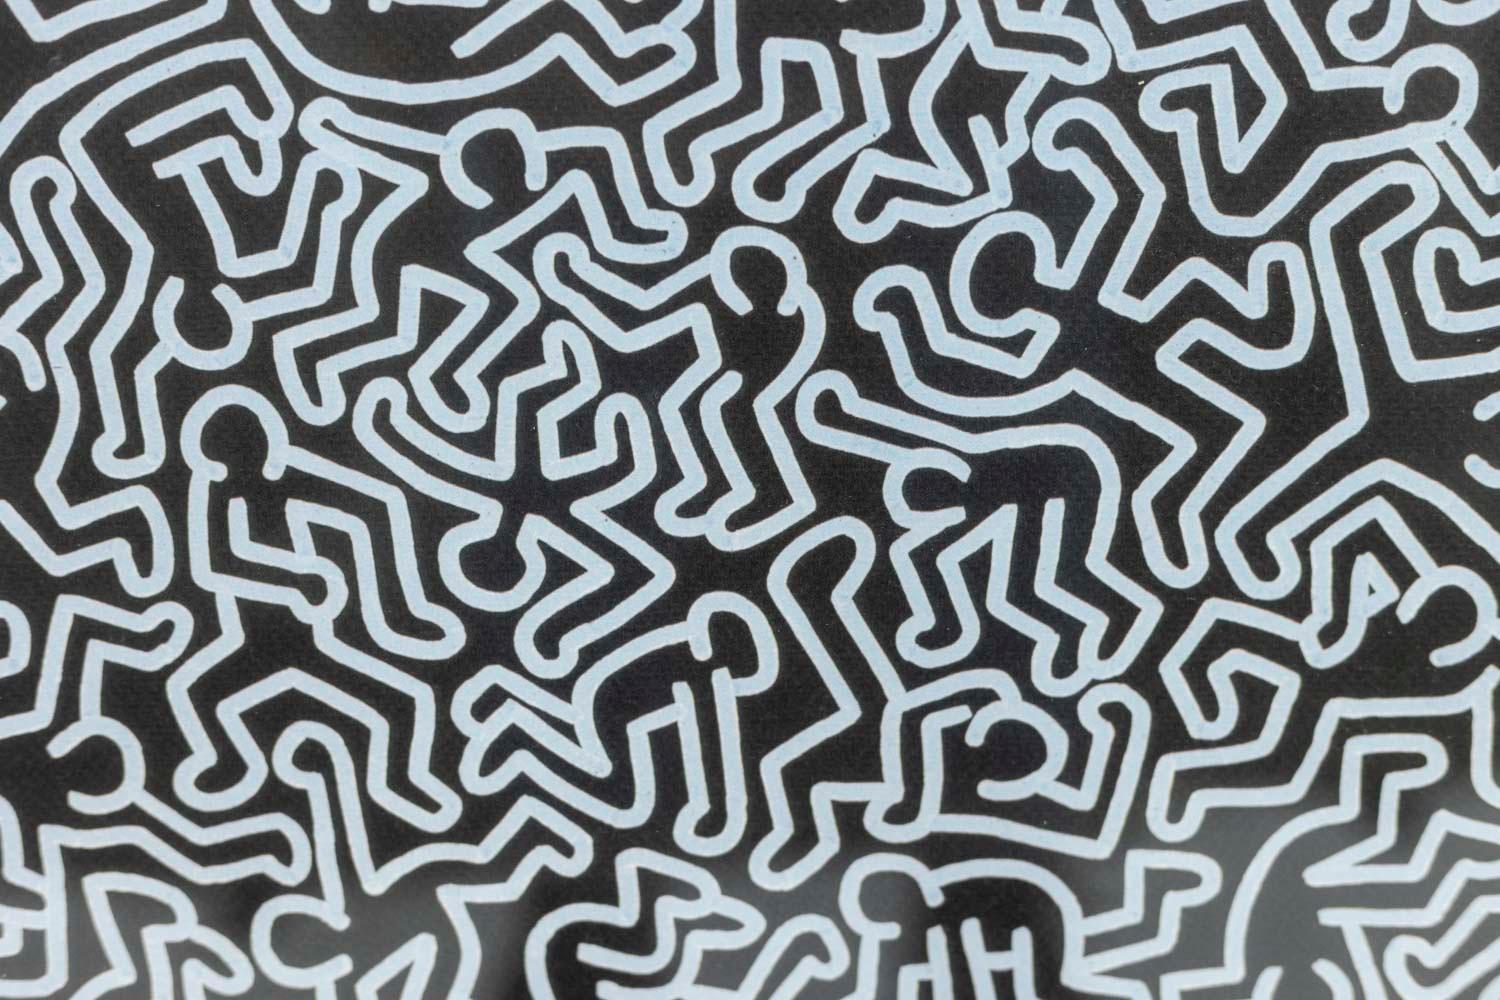 Keith Haring, signé et numéroté.

Lithographie représentant des personnages en mouvement, dans des tons de bleu sur un fond noir, dans son cadre en chêne blond.

Numéroté 70/150.

Travail américain réalisé dans les années 1990.